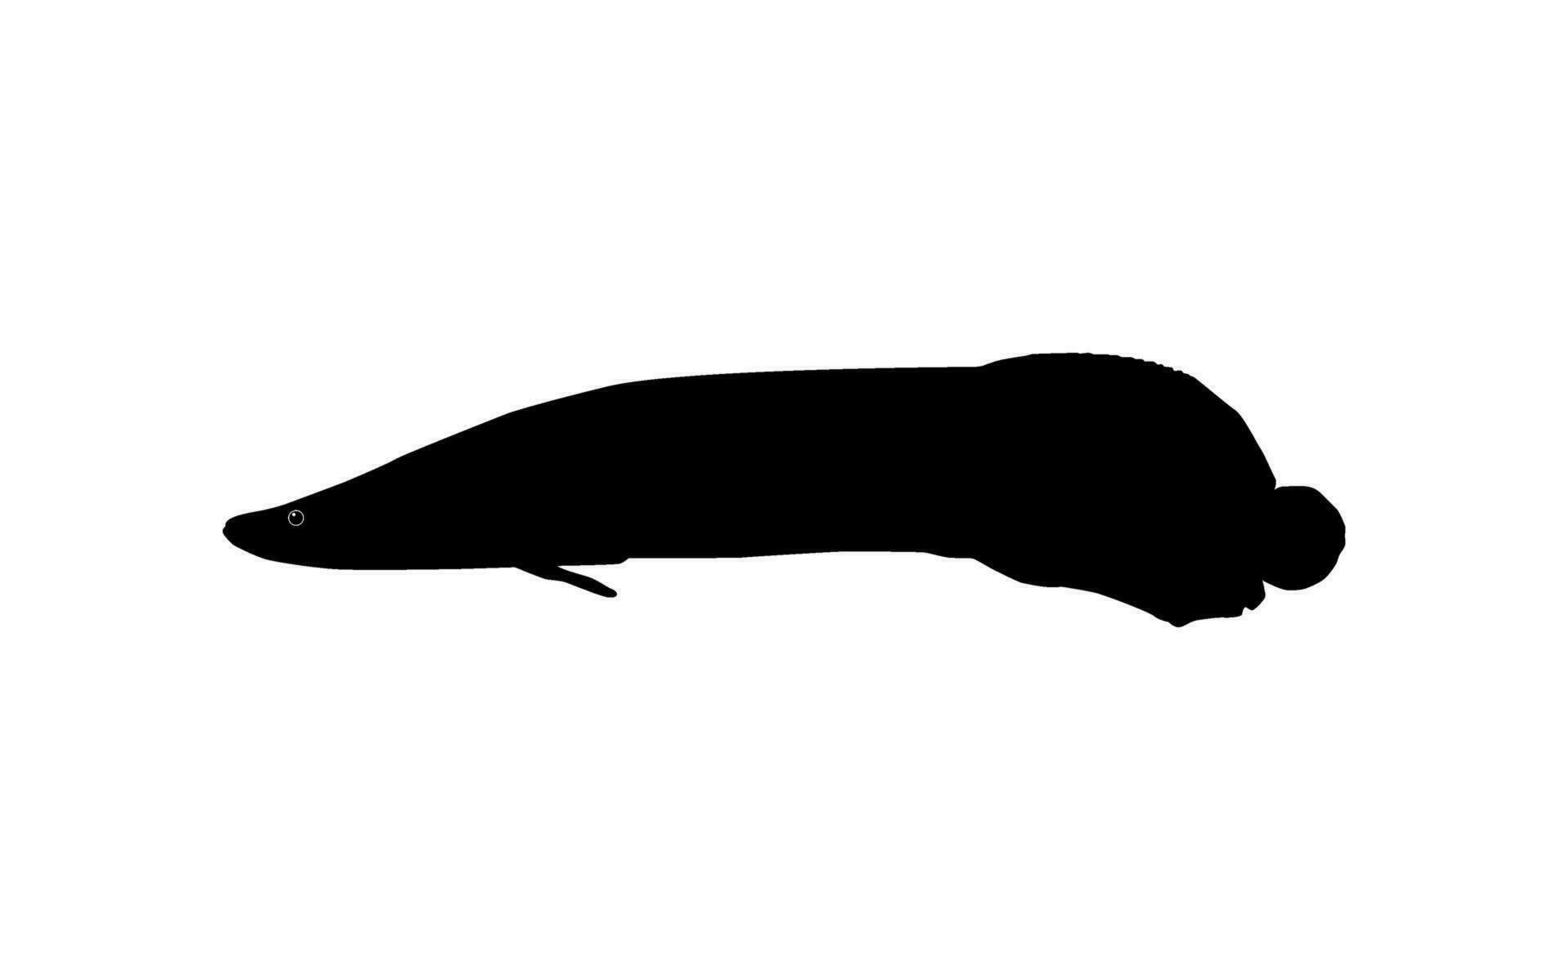 silueta de el pescado arapaima, o pirarucú, o paiche, para icono, símbolo, pictograma, Arte ilustración, logo tipo, sitio web o gráfico diseño elemento. vector ilustración